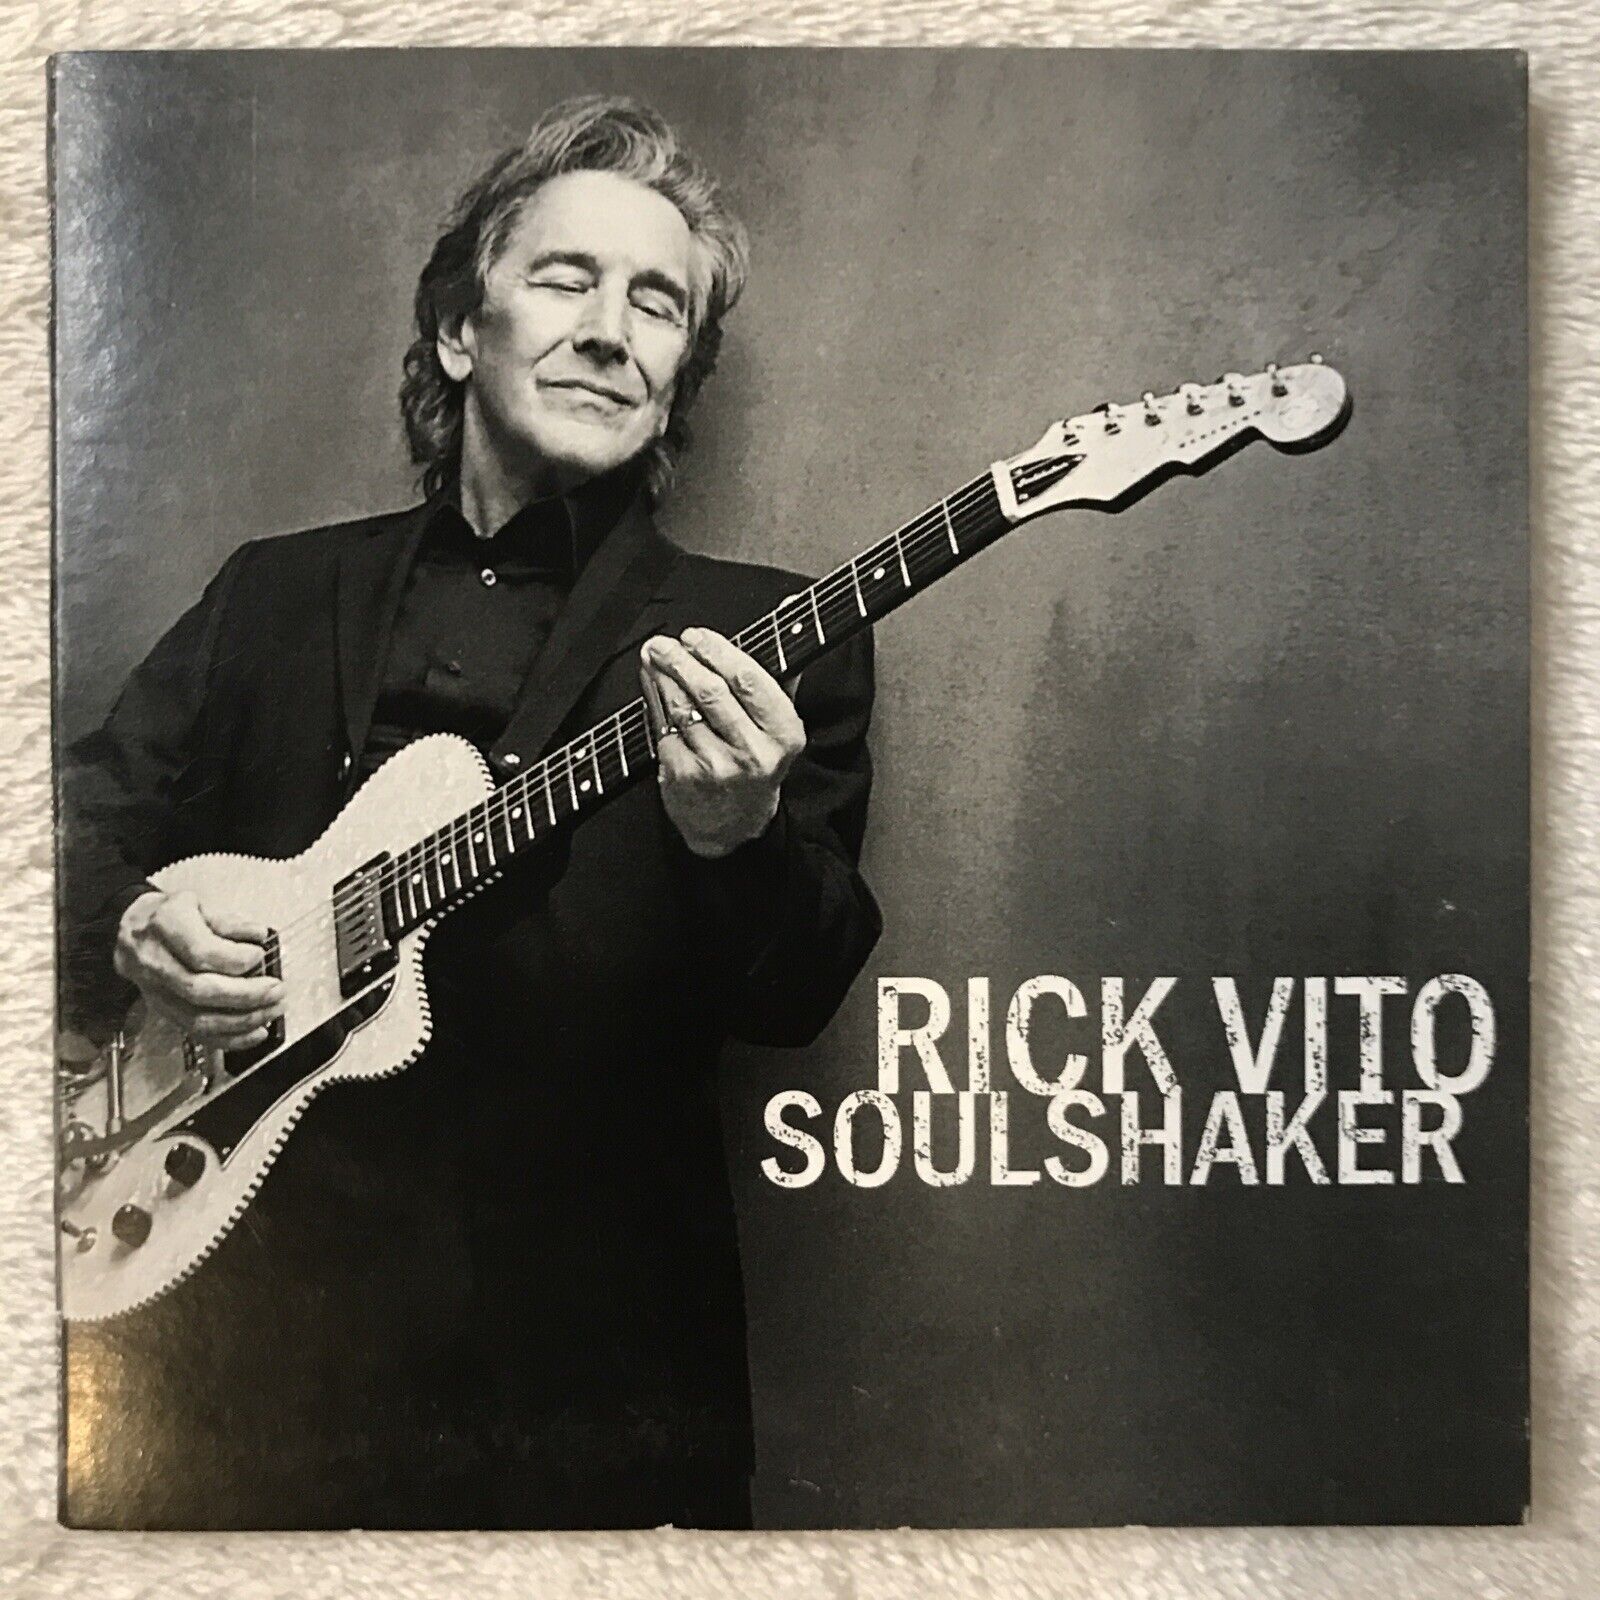 Rick Vito - Soulshaker (CD, 2019, VizzTone) Blues Rock